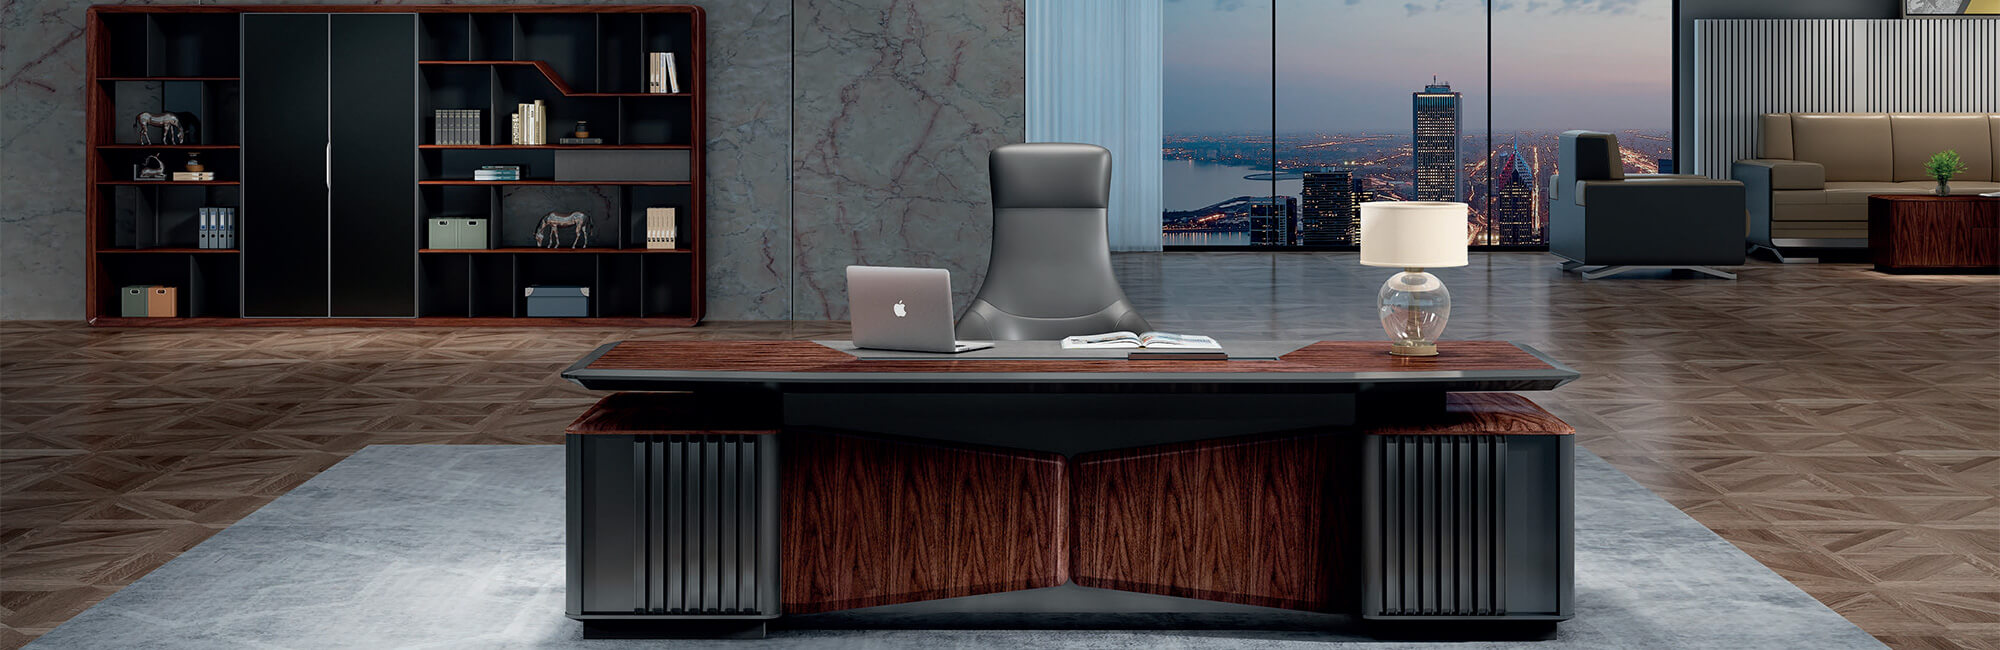 Como muebles modernos, el escritorio ejecutivo de gama alta de Sunac proporciona una gran área de superficie de trabajo para que los gerentes faciliten su trabajo.